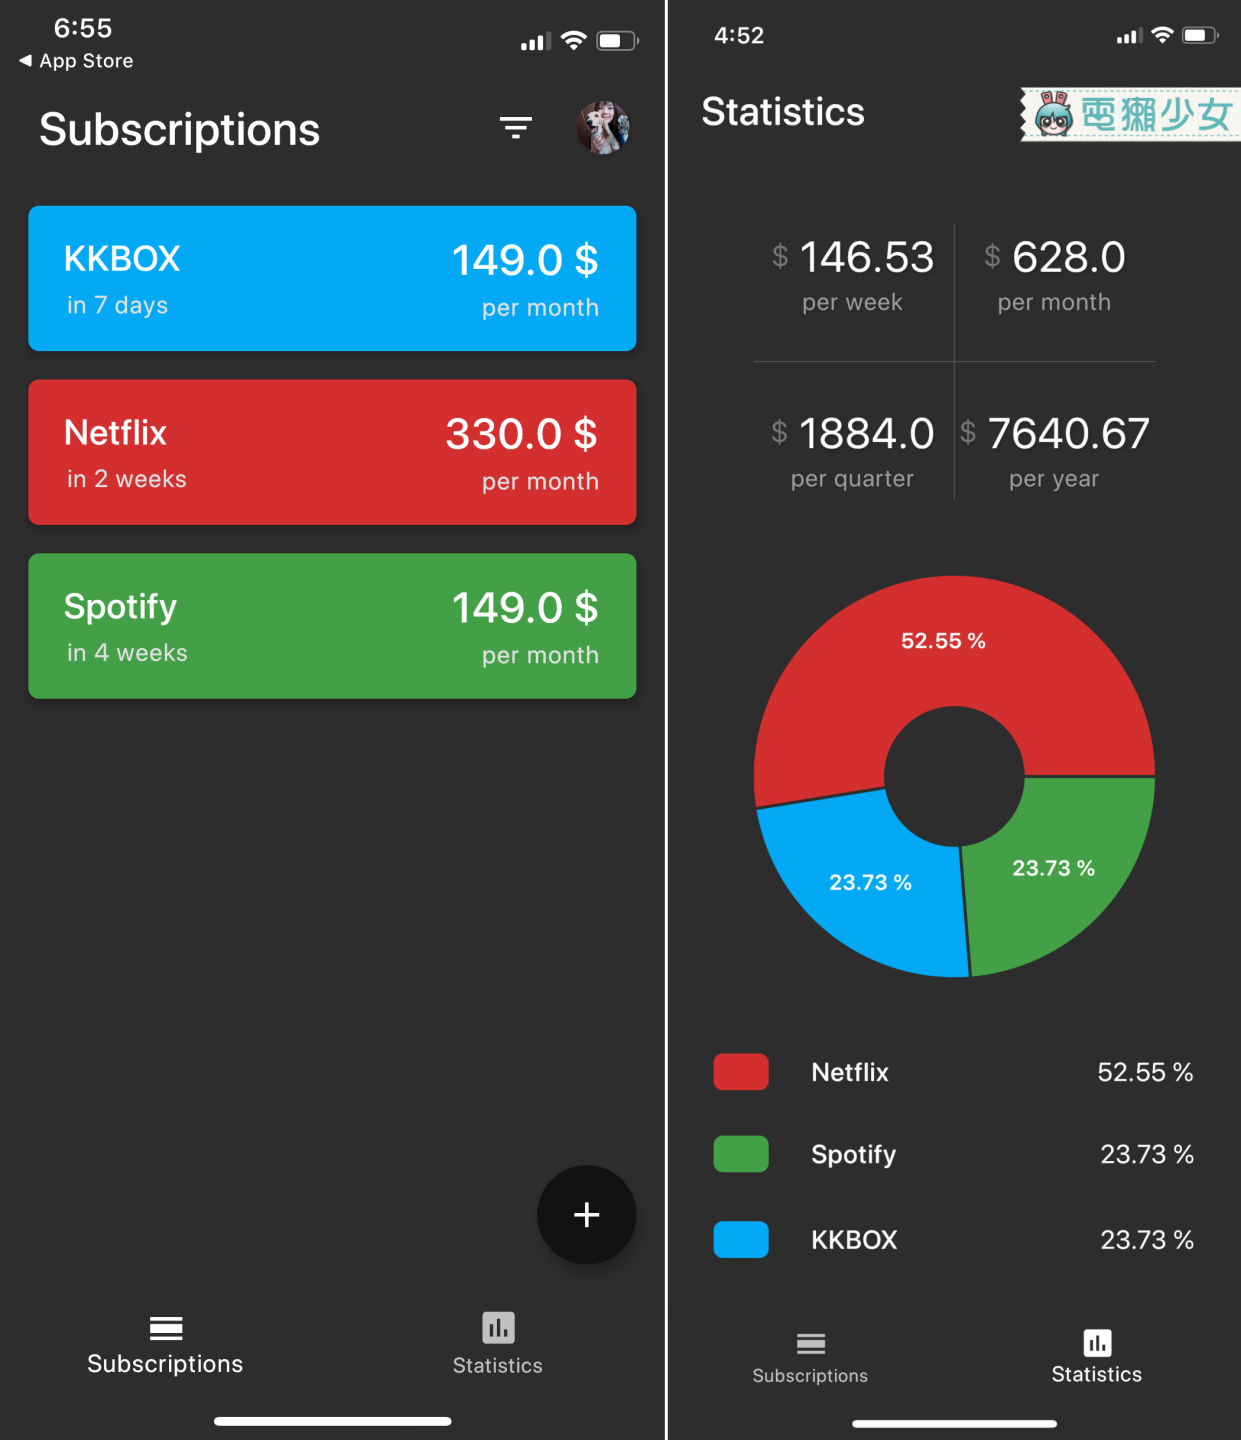 每個月在付費訂閱上到底花了多少錢？快用『 Billey 』App 幫你查看管理吧！Android / iOS